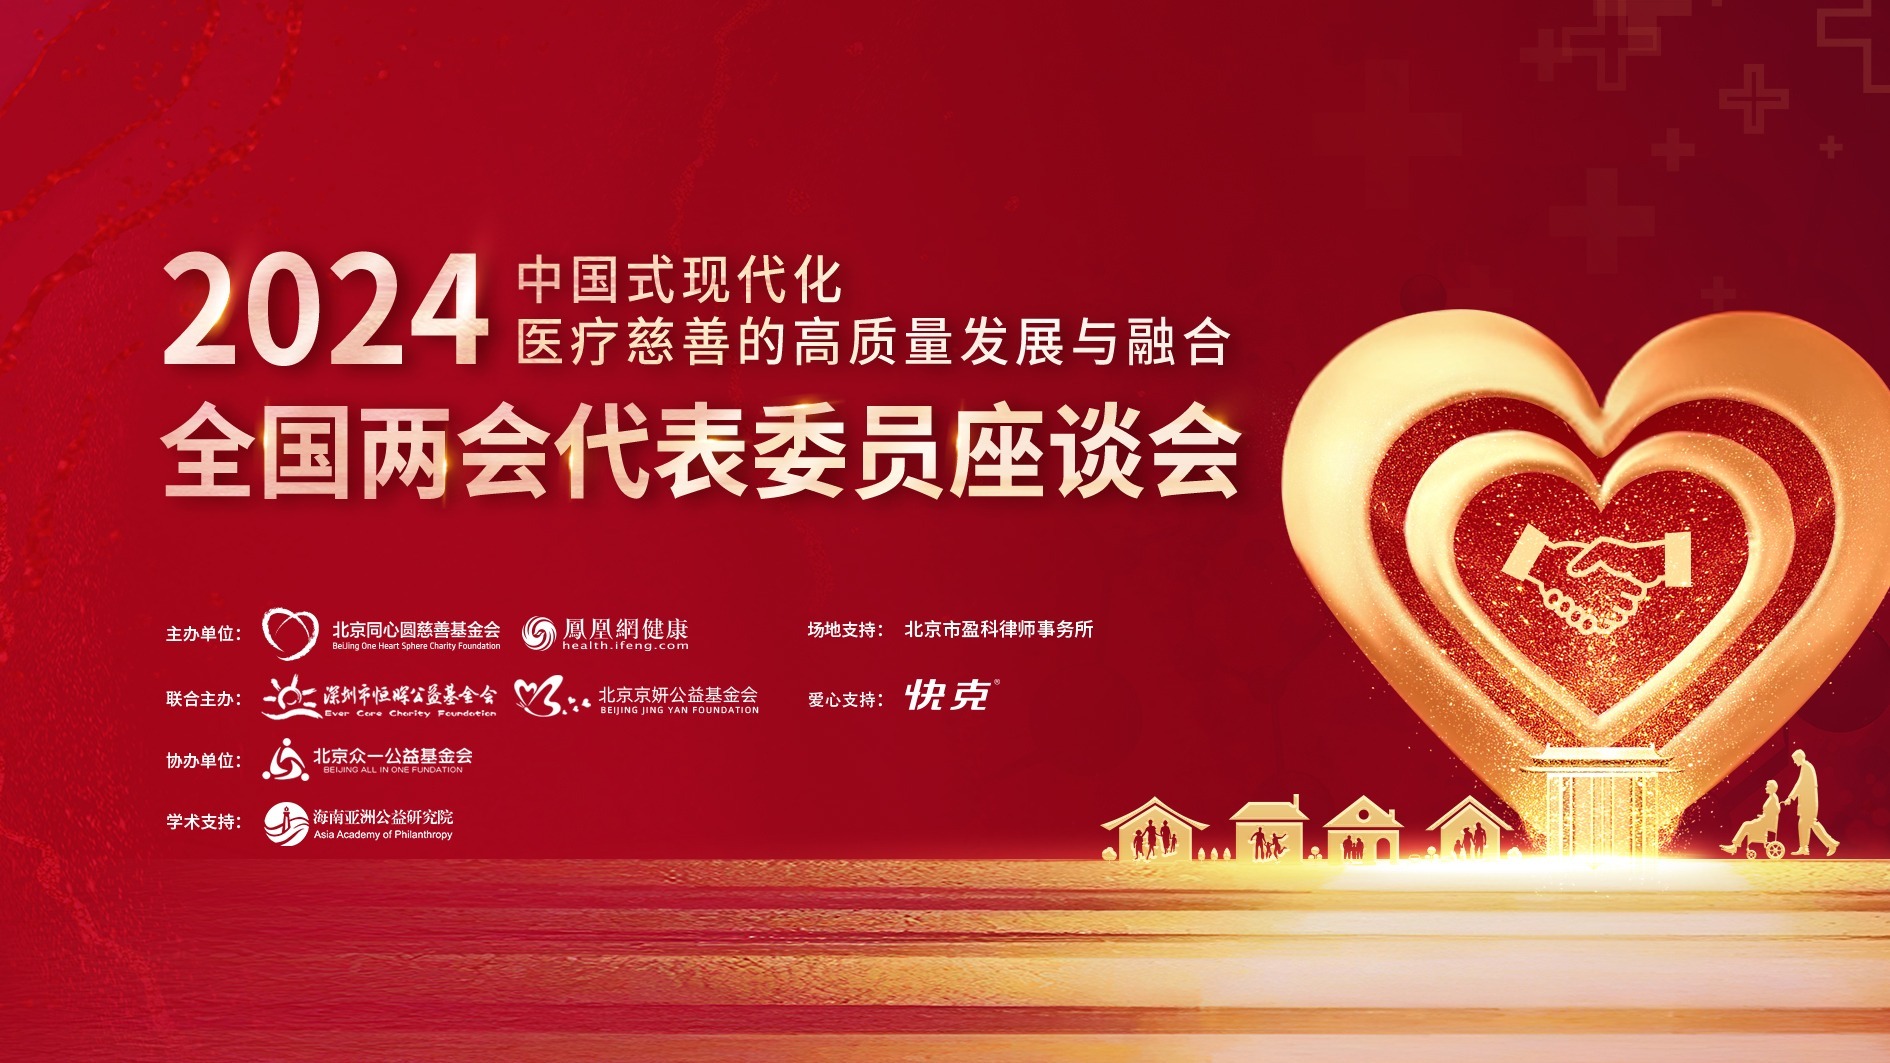 金句分享|中國式現代化醫療慈善的高質量發展與融合座談會在京舉辦